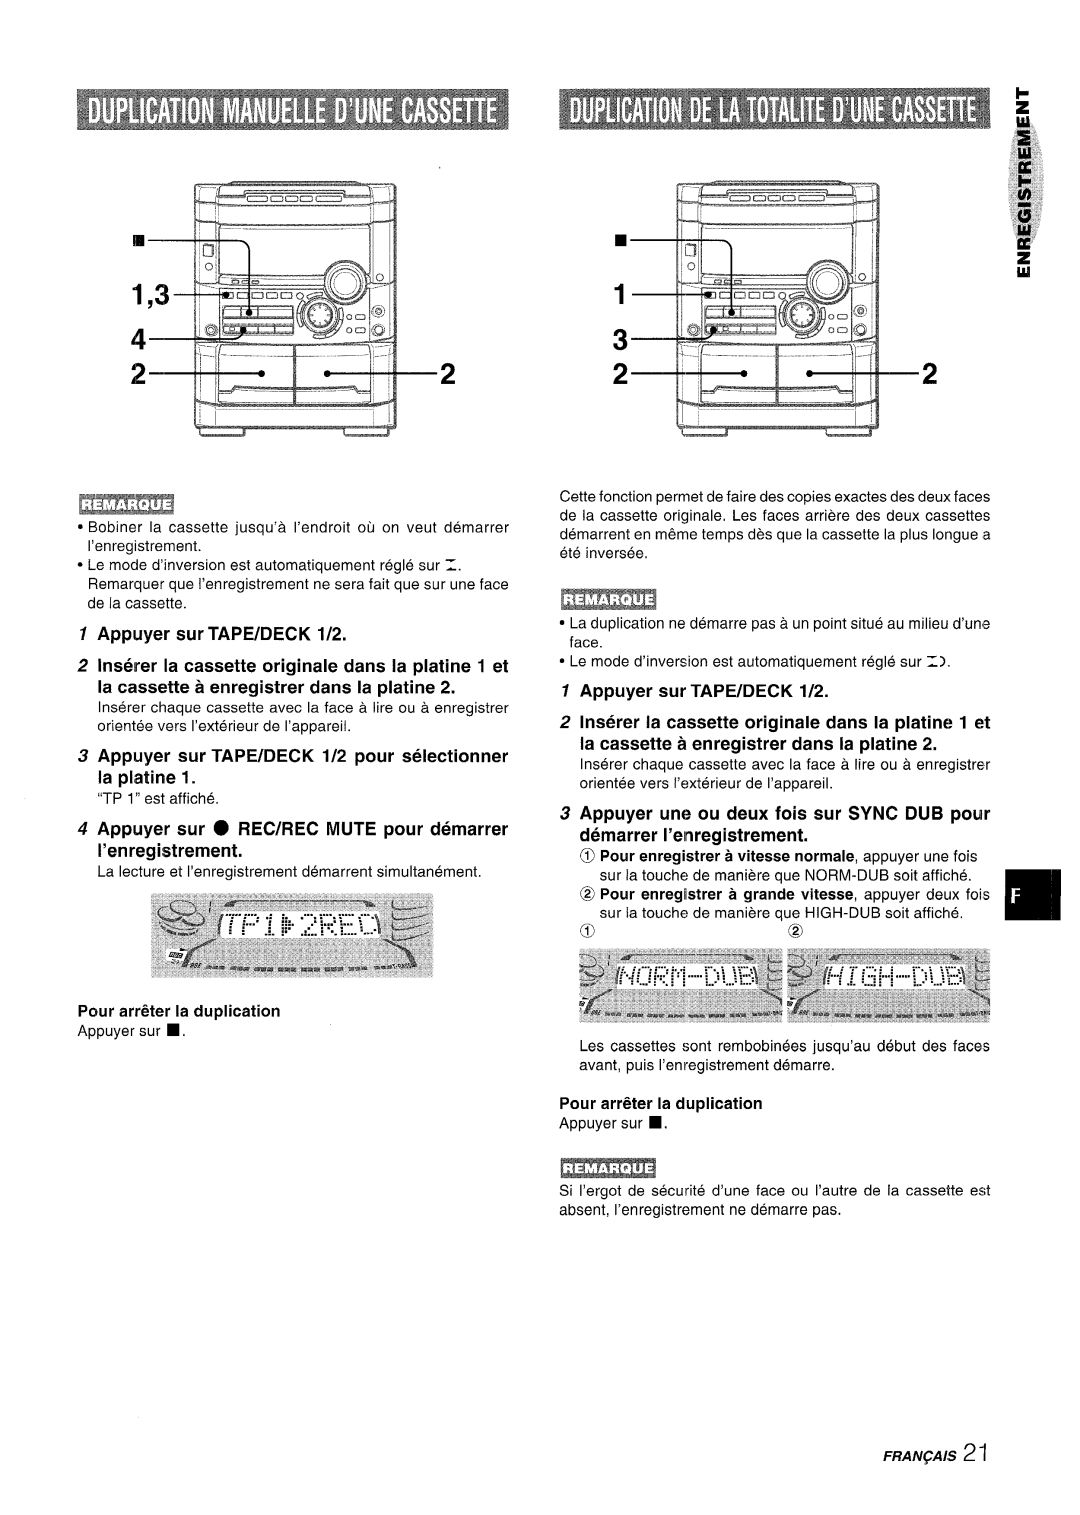 Sony NSX-A767 manual Appuyer sur TAPE/DECK 1/2 pour selectionner la platine, Pour arr&er la duplication, FRAN~AIS 2 ‘1 